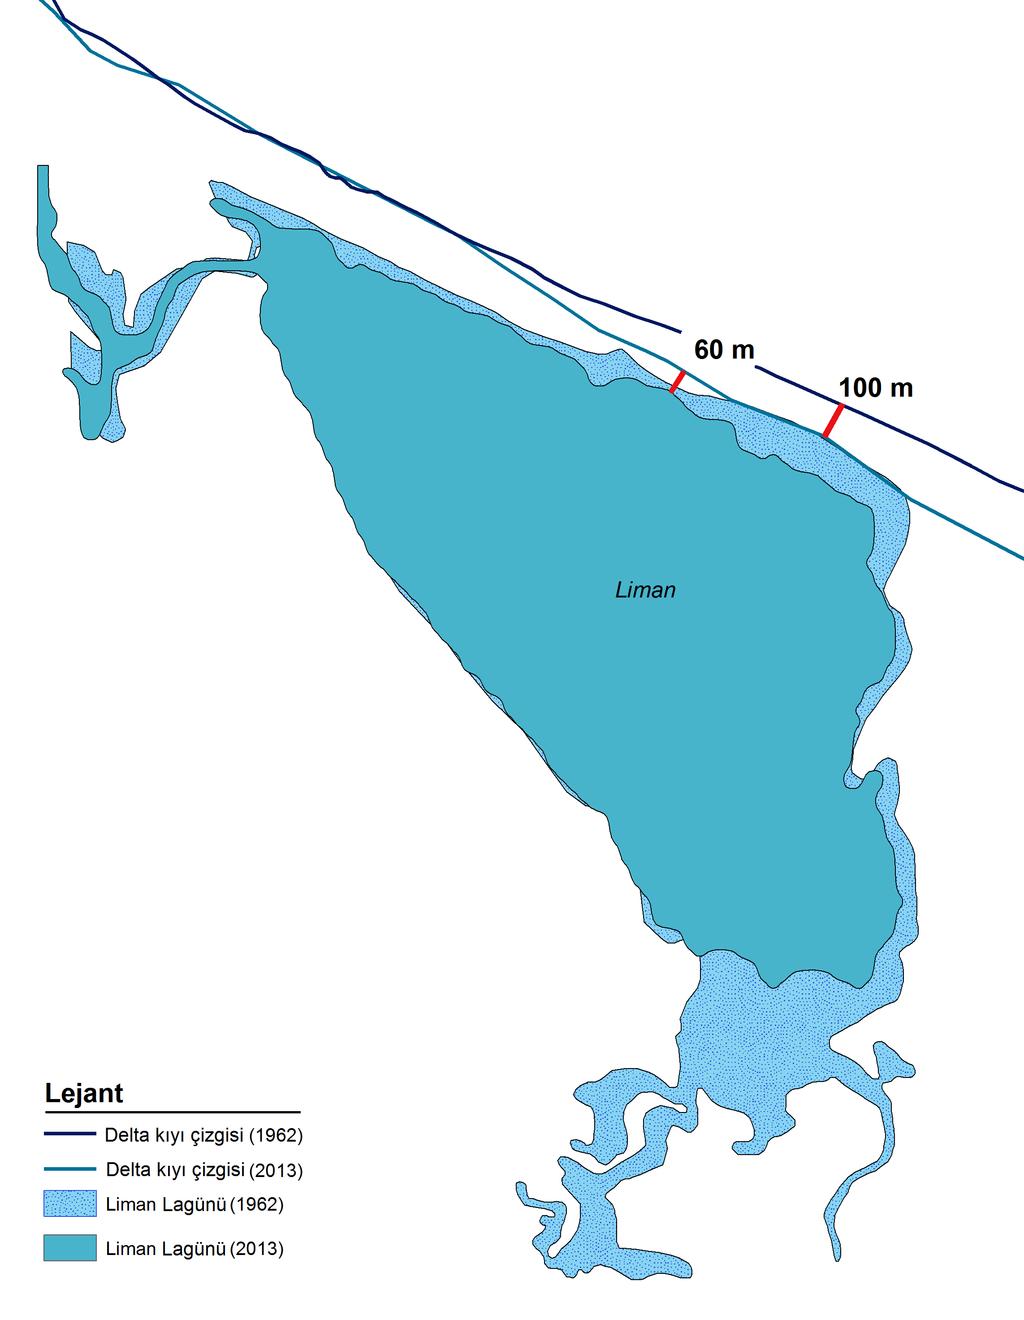 Kızılırmak Lagünlerinin Kıyı Çizgisinde Meydana Gelen Değişimlerin Analizi 1987 periyodunda 32.8 ha küçülme ve 1987-2013 periyodunda ise 118.5 ha küçülme meydana gelmiştir.